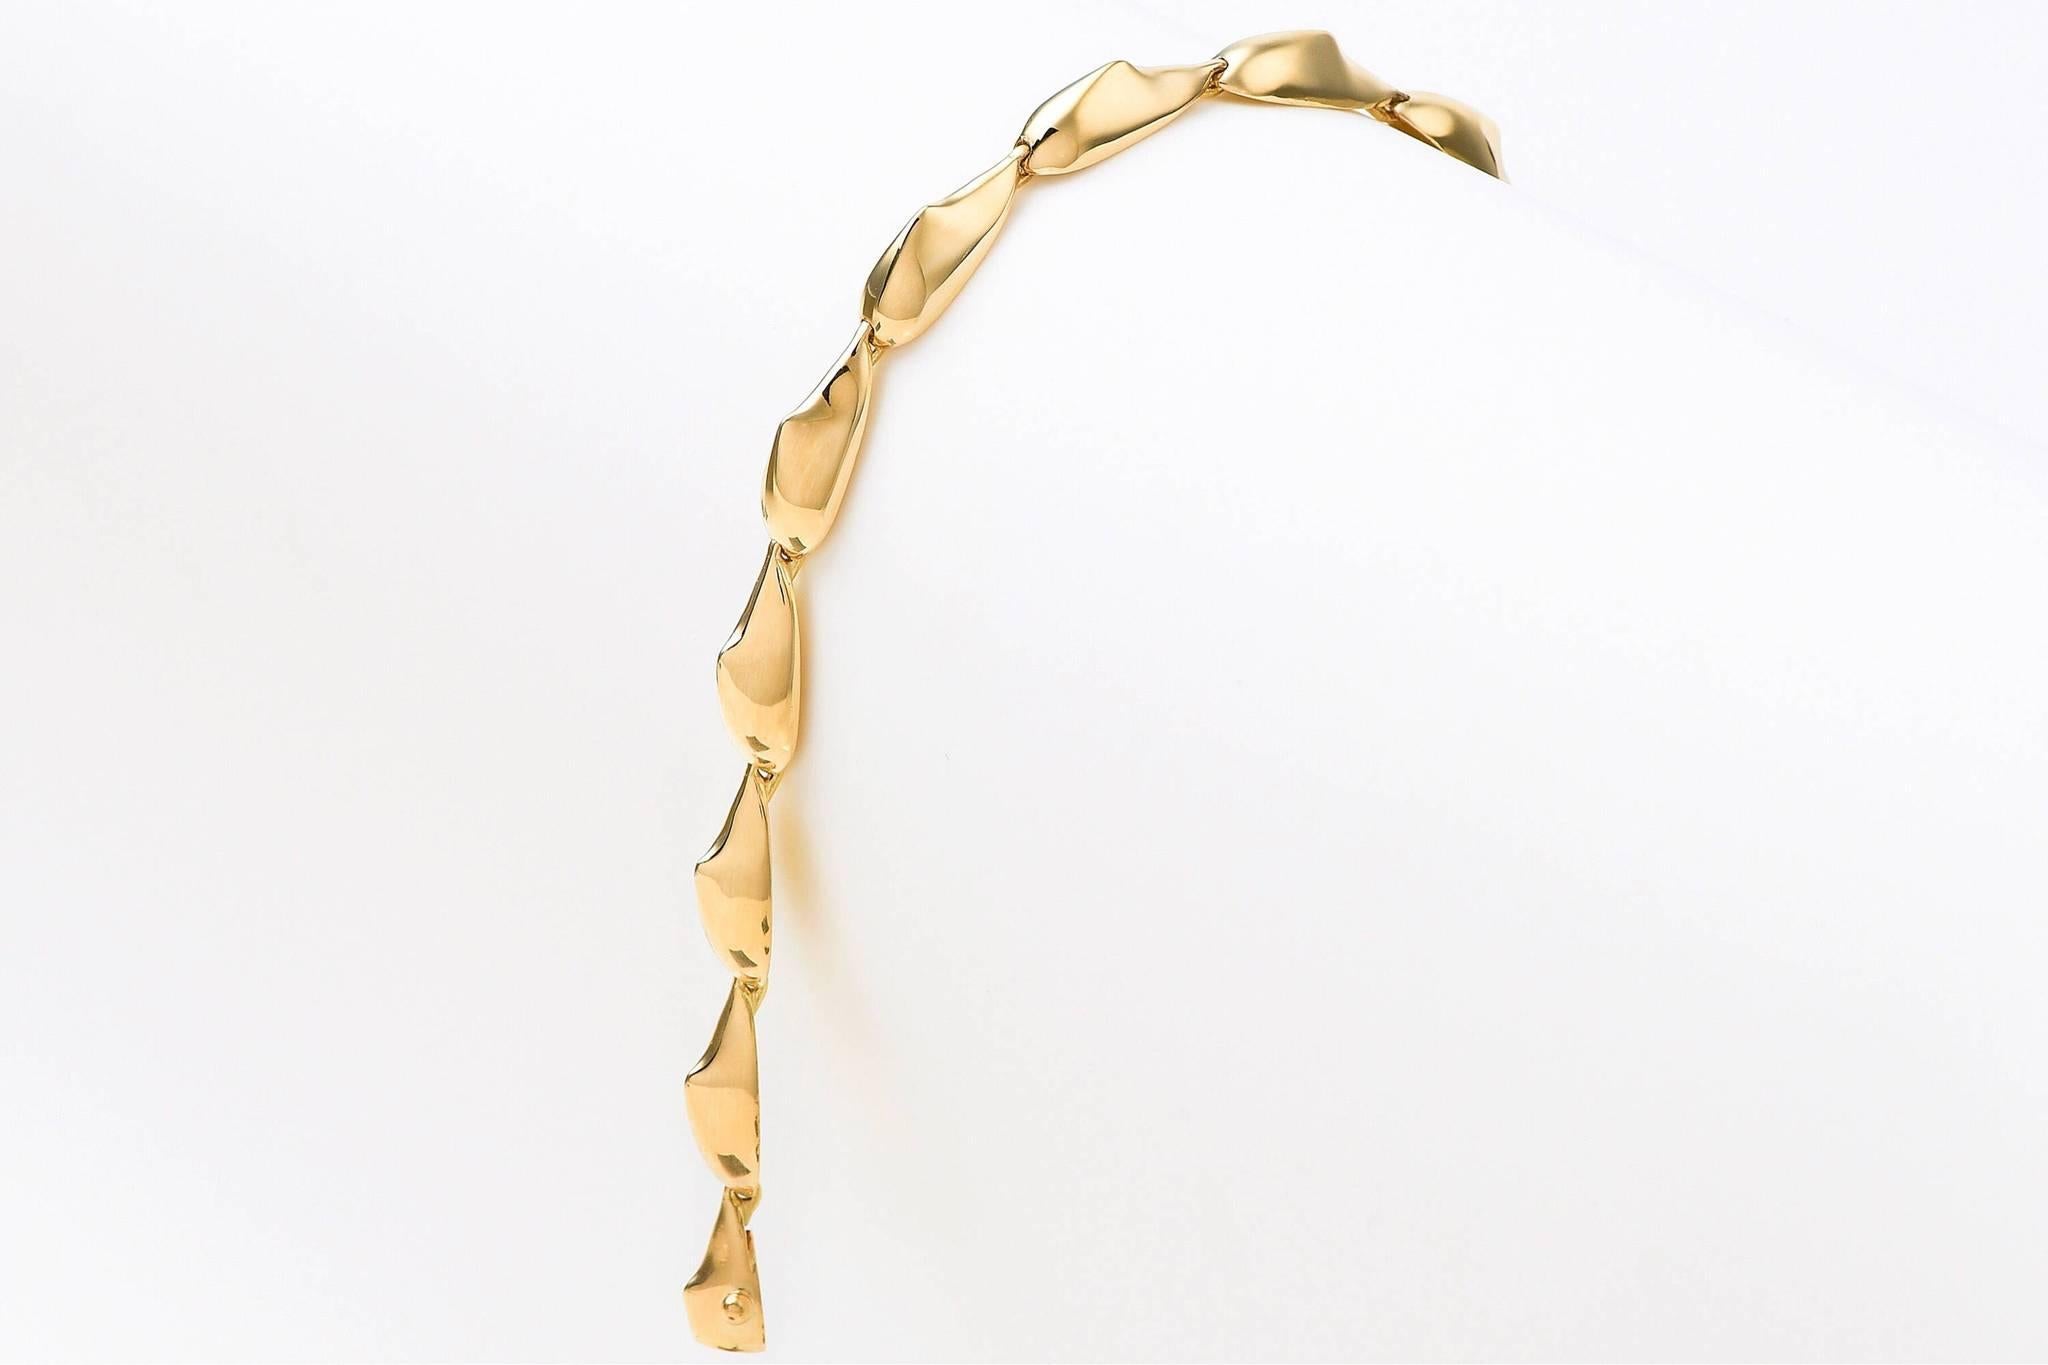 Das Gliederarmband 'Spiked' ist aus 18 Karat Gelbgold gefertigt und in Zypern gestempelt. Dieses elegante, skulpturale Armband ist hochglanzpoliert und besteht aus skulpturalen Teilen, die meisterhaft miteinander verbunden sind, um eine anmutige